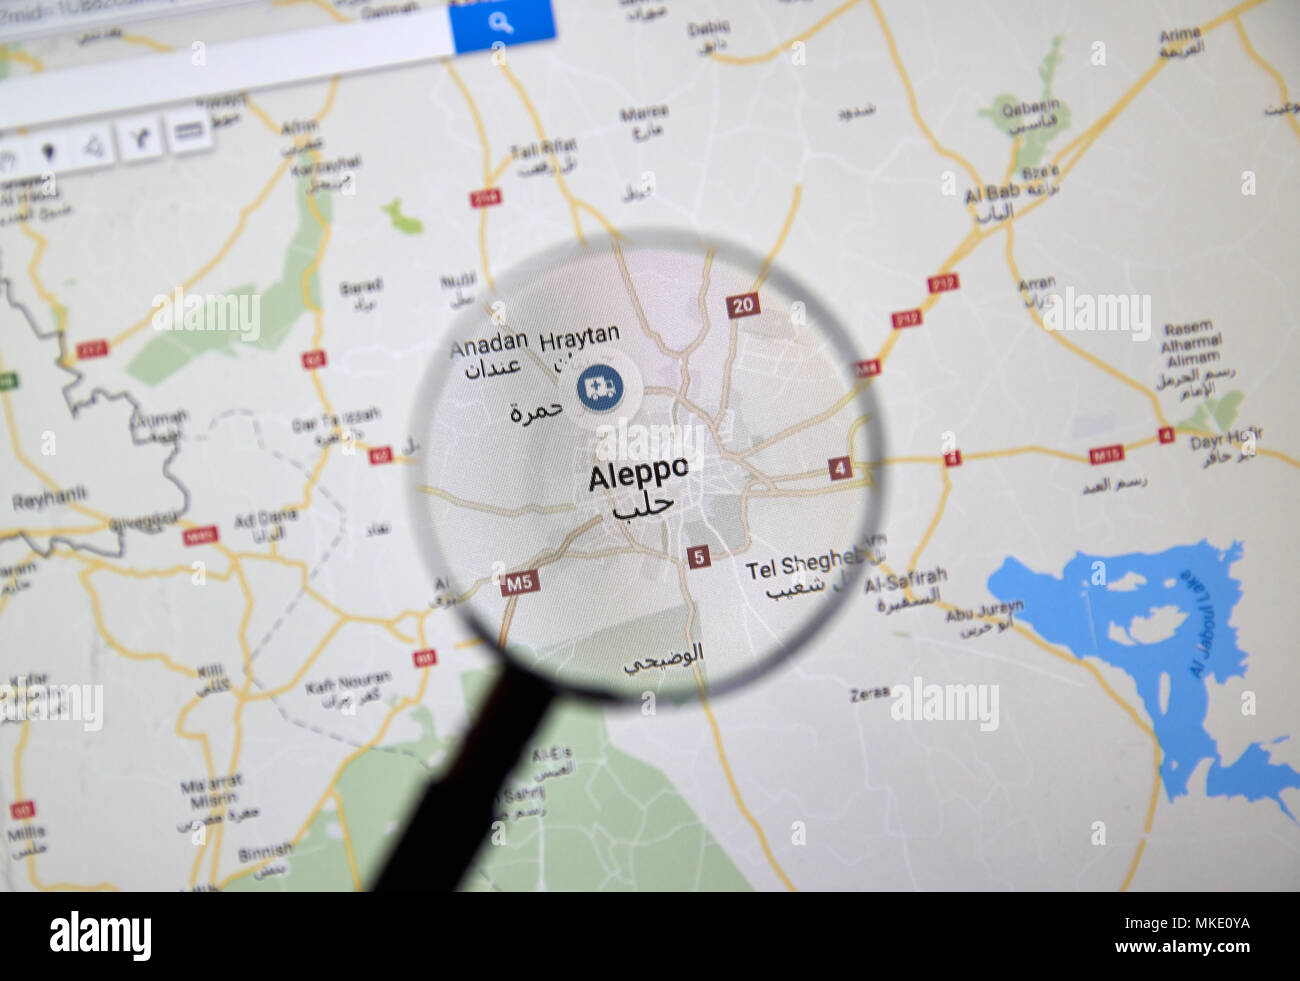 MONTREAL, Canada - 10 Marzo 2018: Aleppo, Siria su Google maps sotto la lente di ingrandimento. La siria ufficialmente conosciuta come la Repubblica araba siriana è un countr Foto Stock